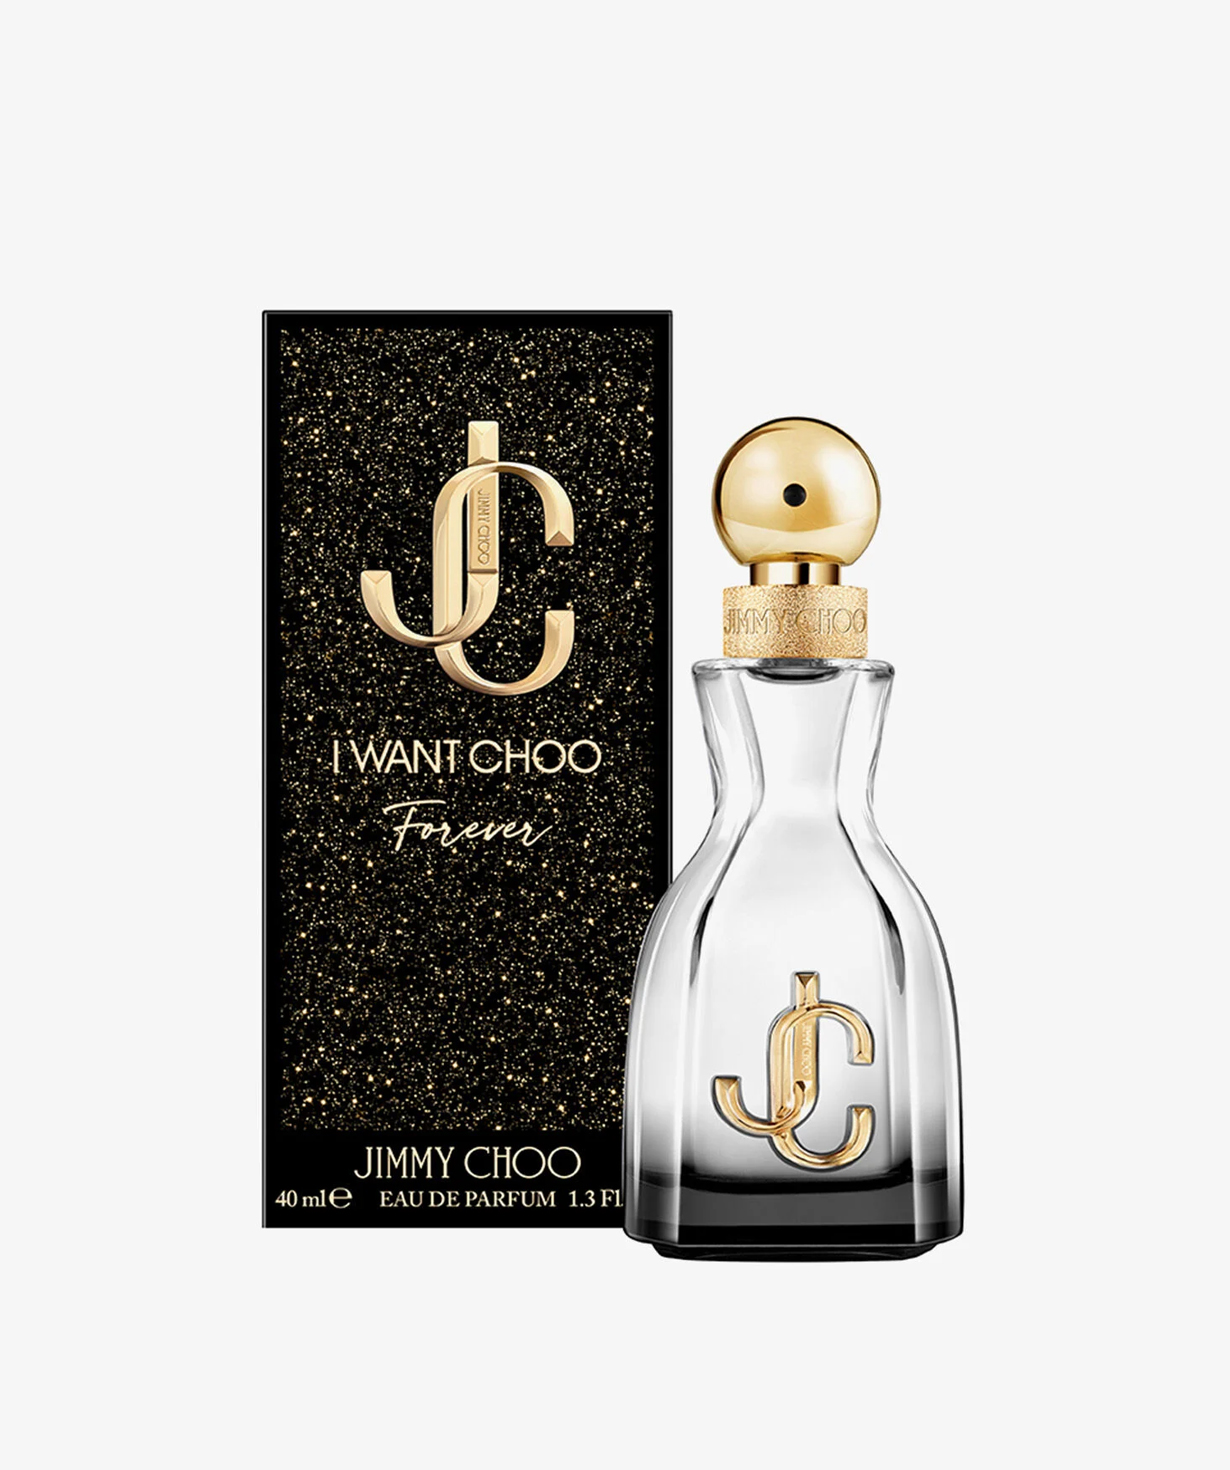 Perfume «Jimmy Choo» I Want Choo Forever, for women, 40 ml